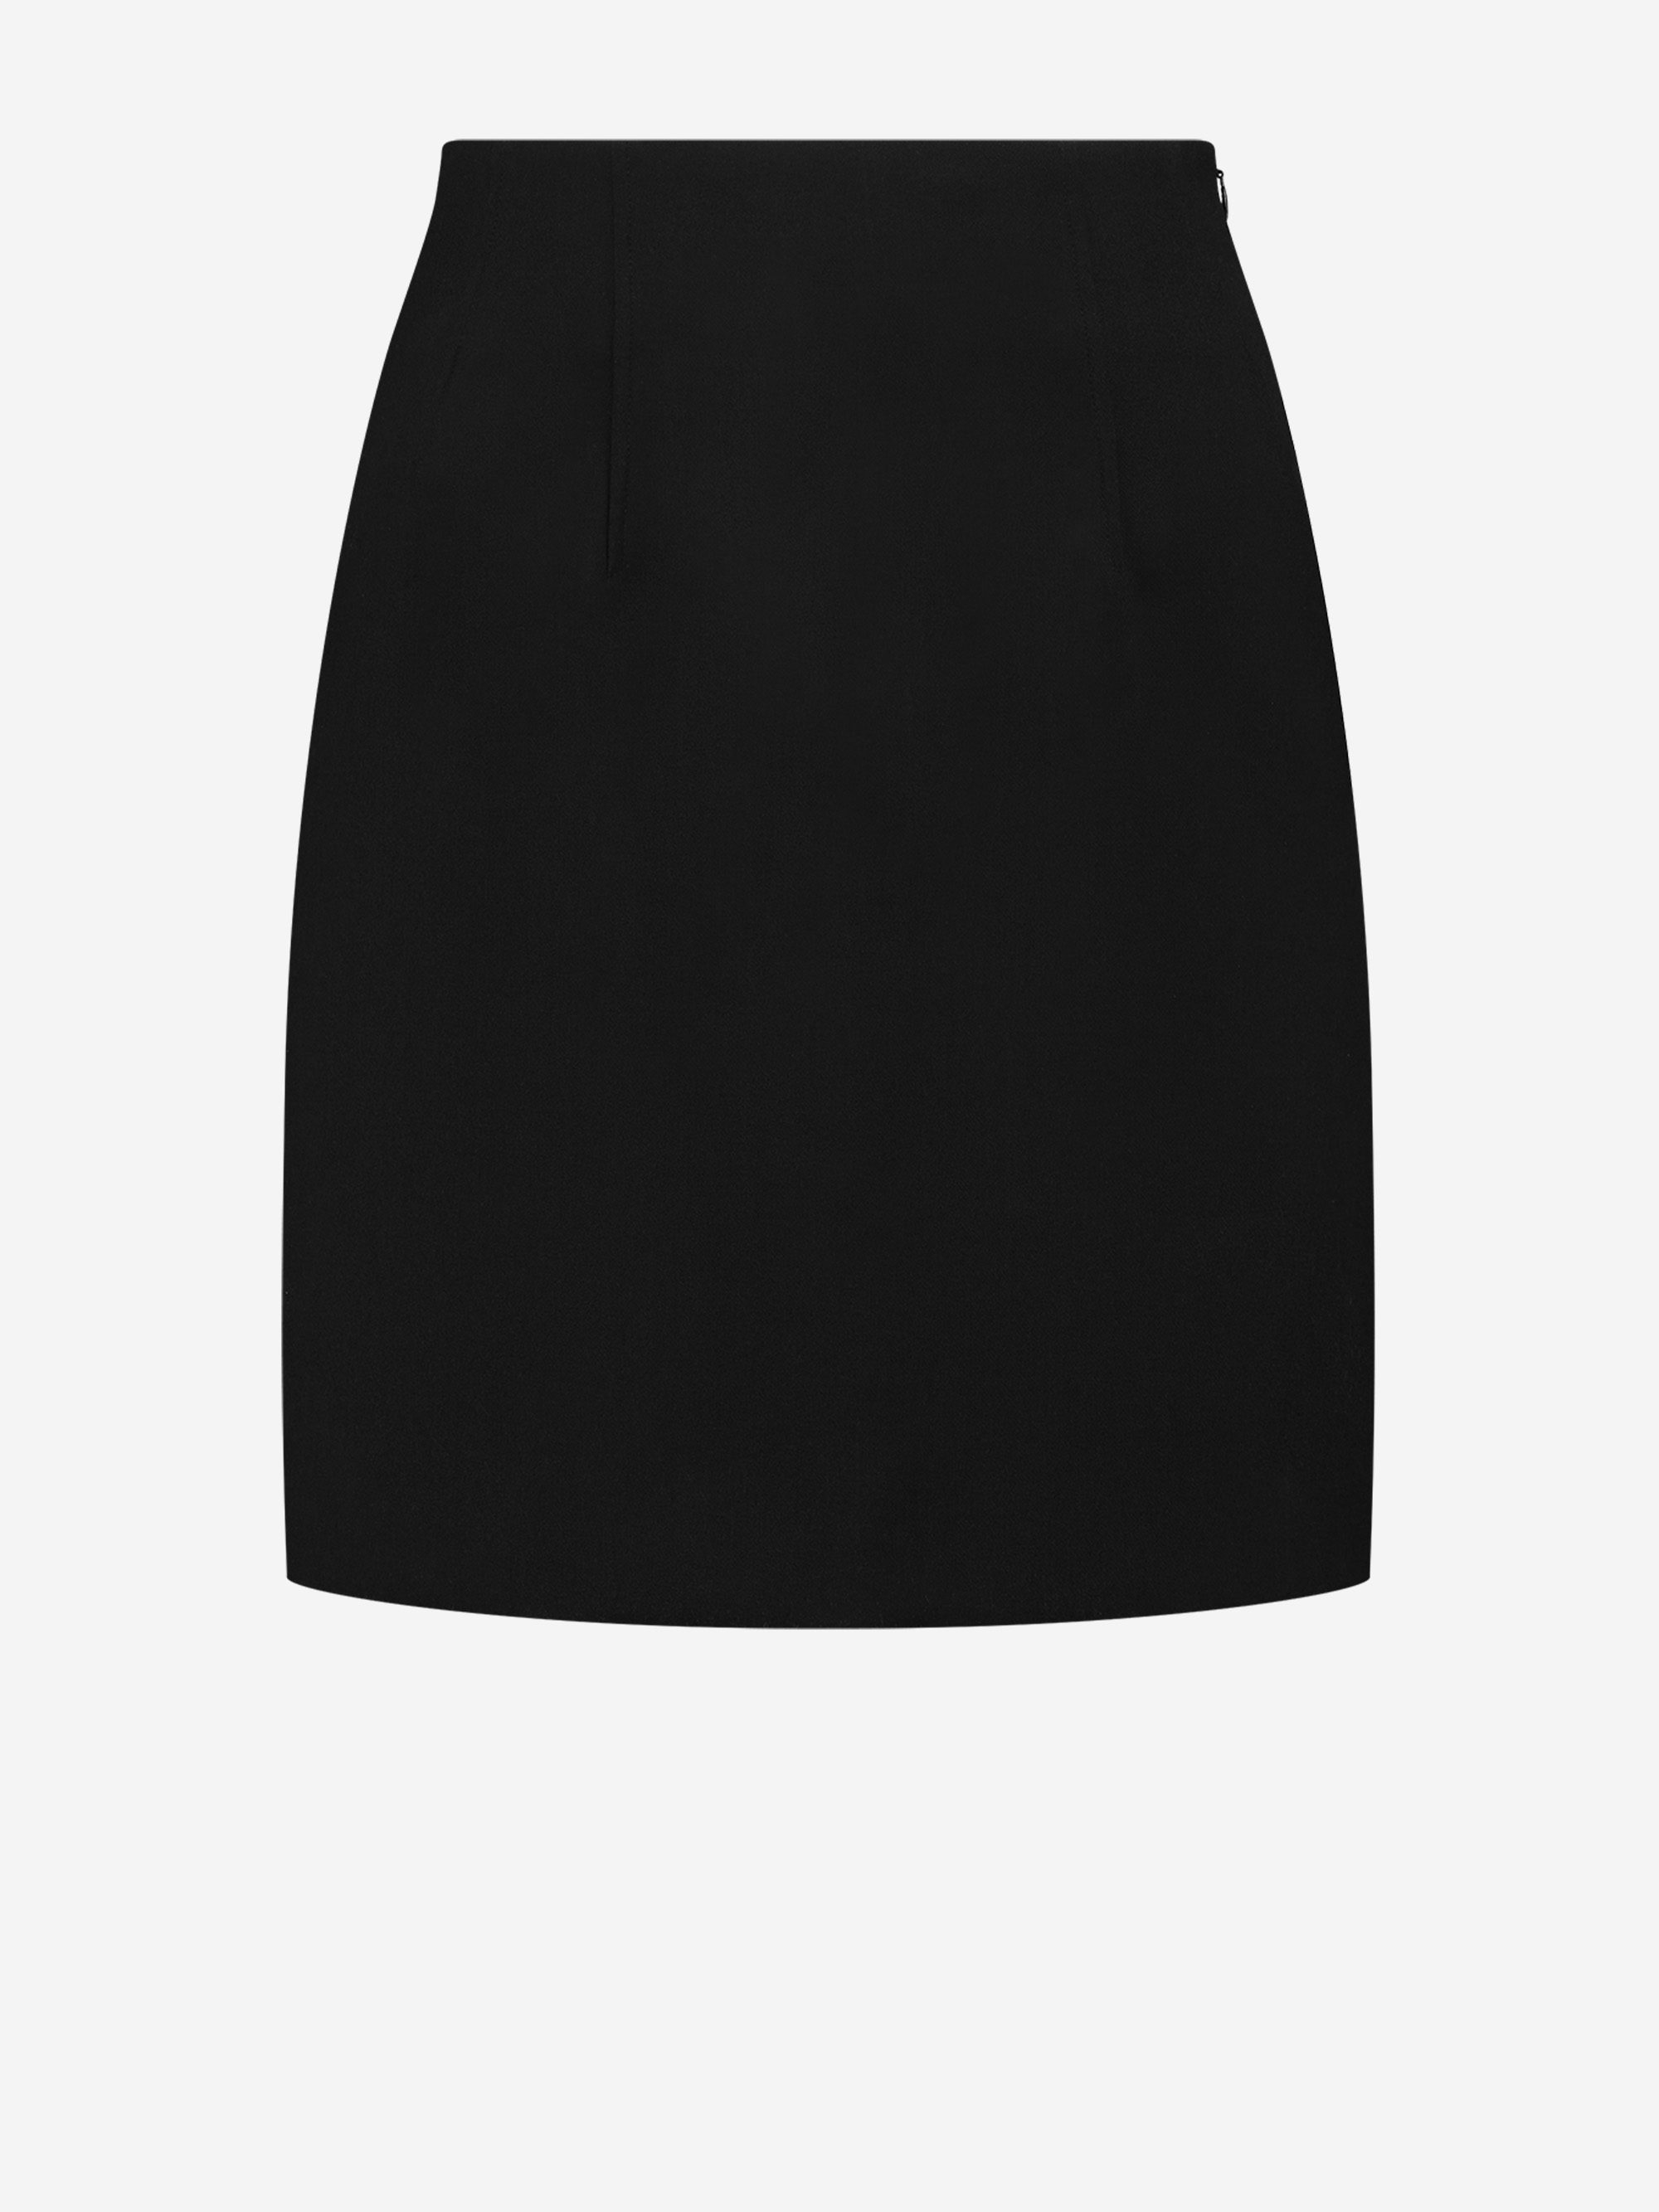 Regular skirt